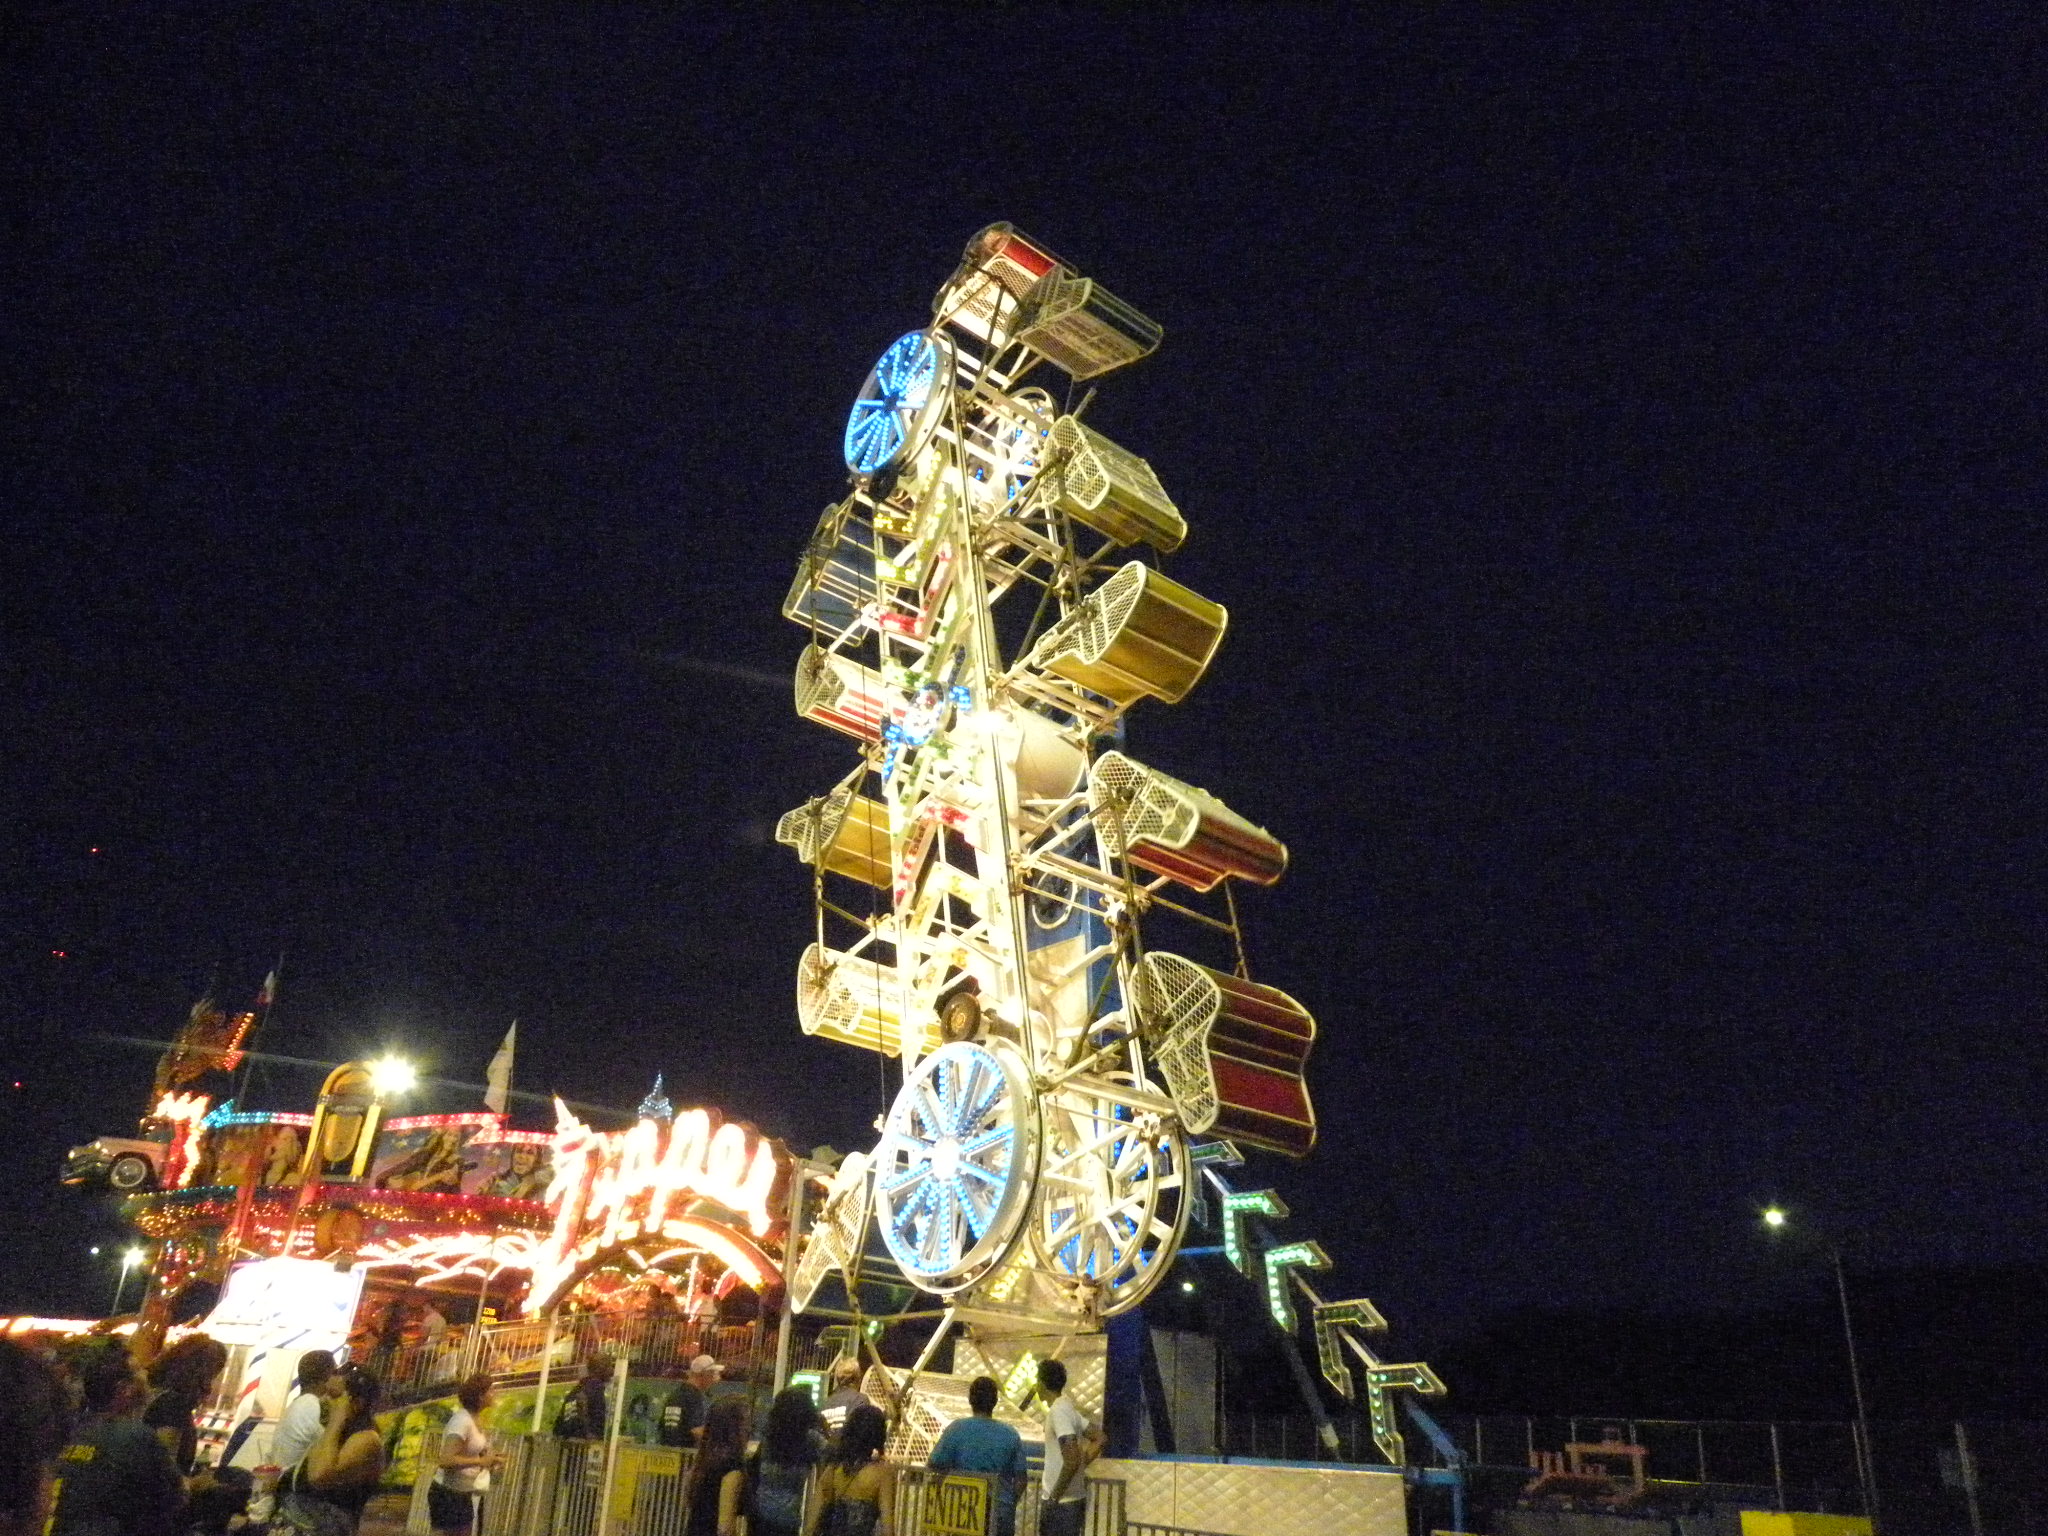 Carousel, Entertainment, Fun, Merrygoround, HQ Photo